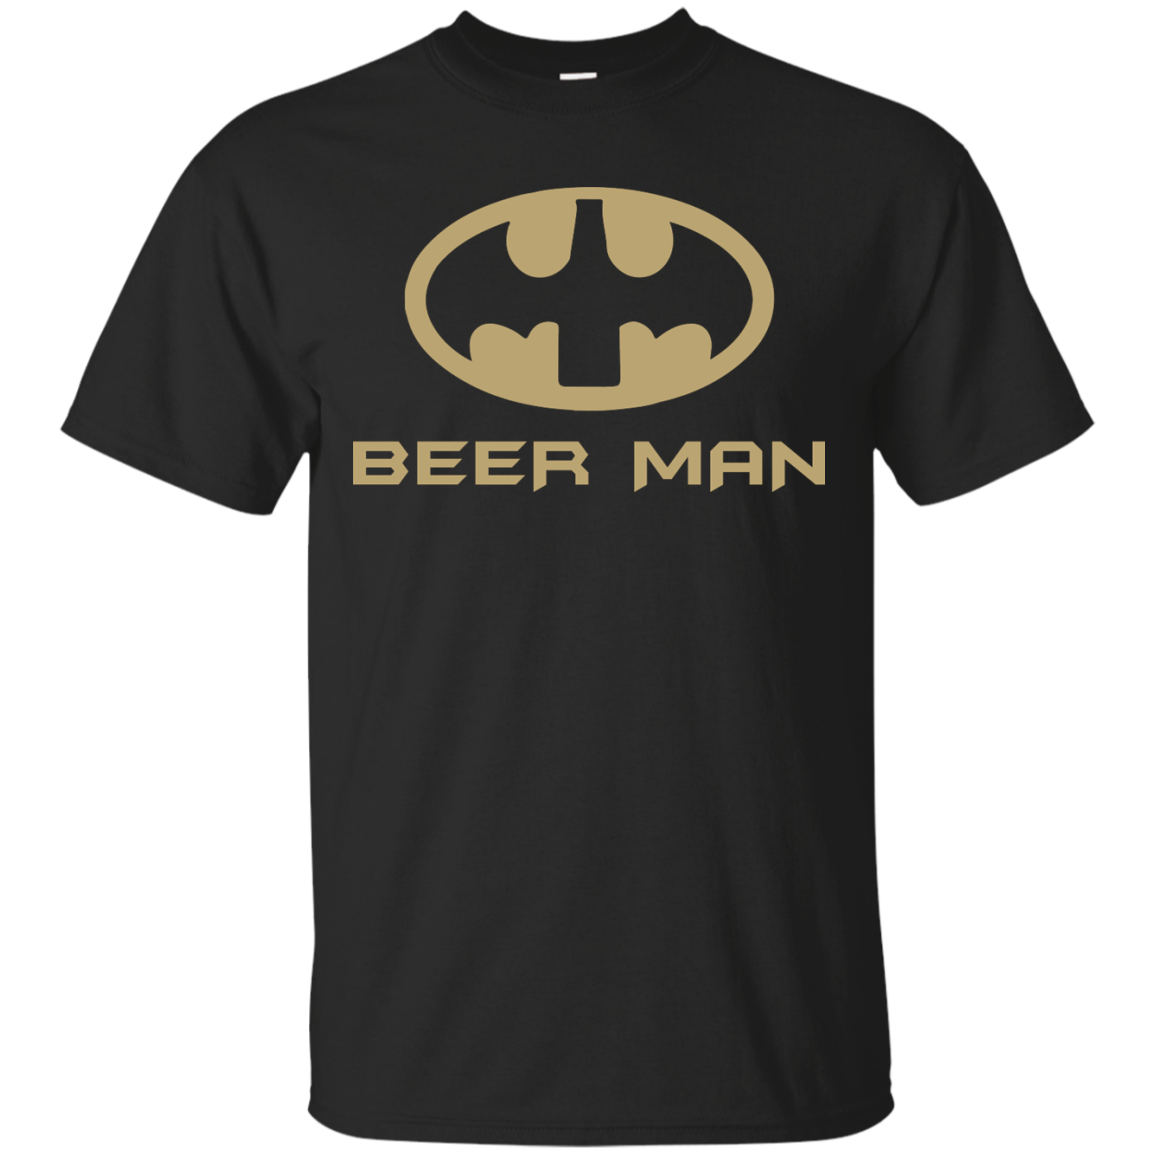 Beer Man - Batman ft Beer Man T-Shirts, Hoodies, Sweaters